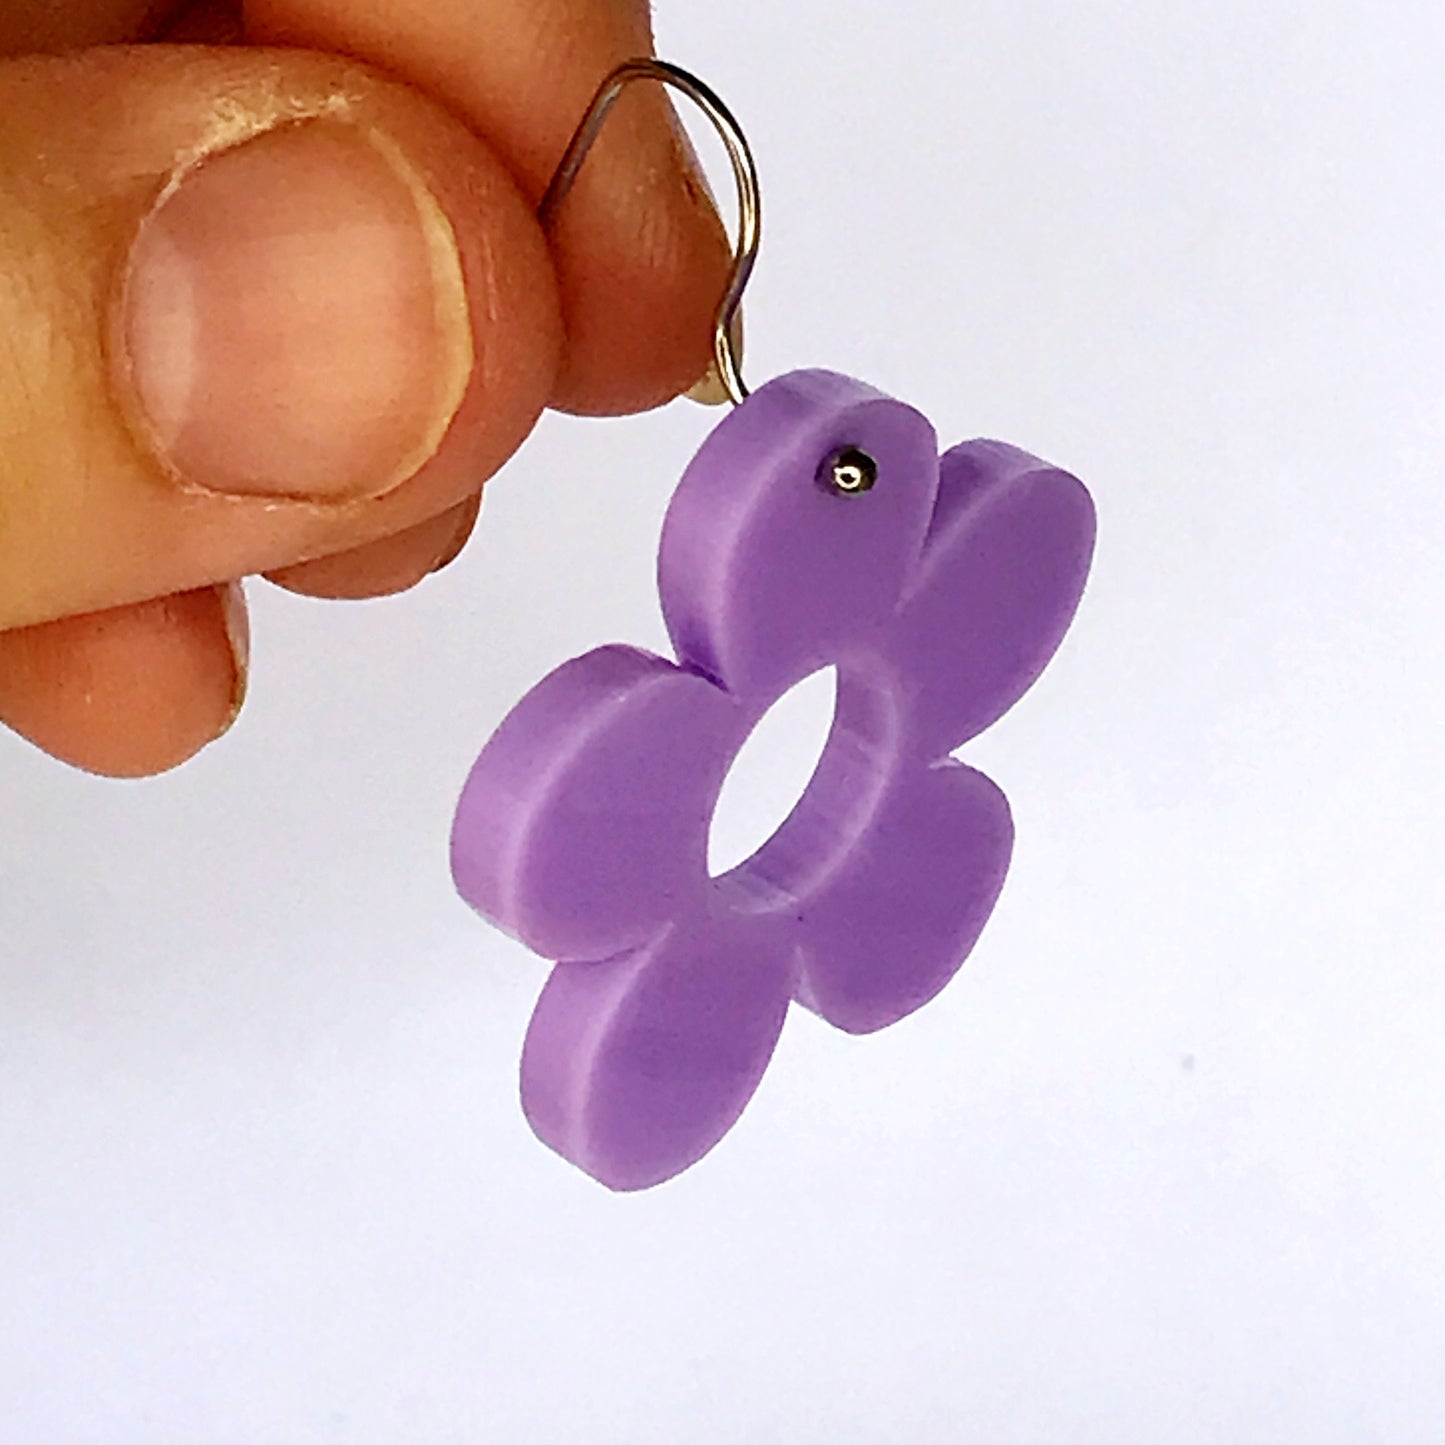 Retro Daisy Earrings - laser cut acrylic - purple